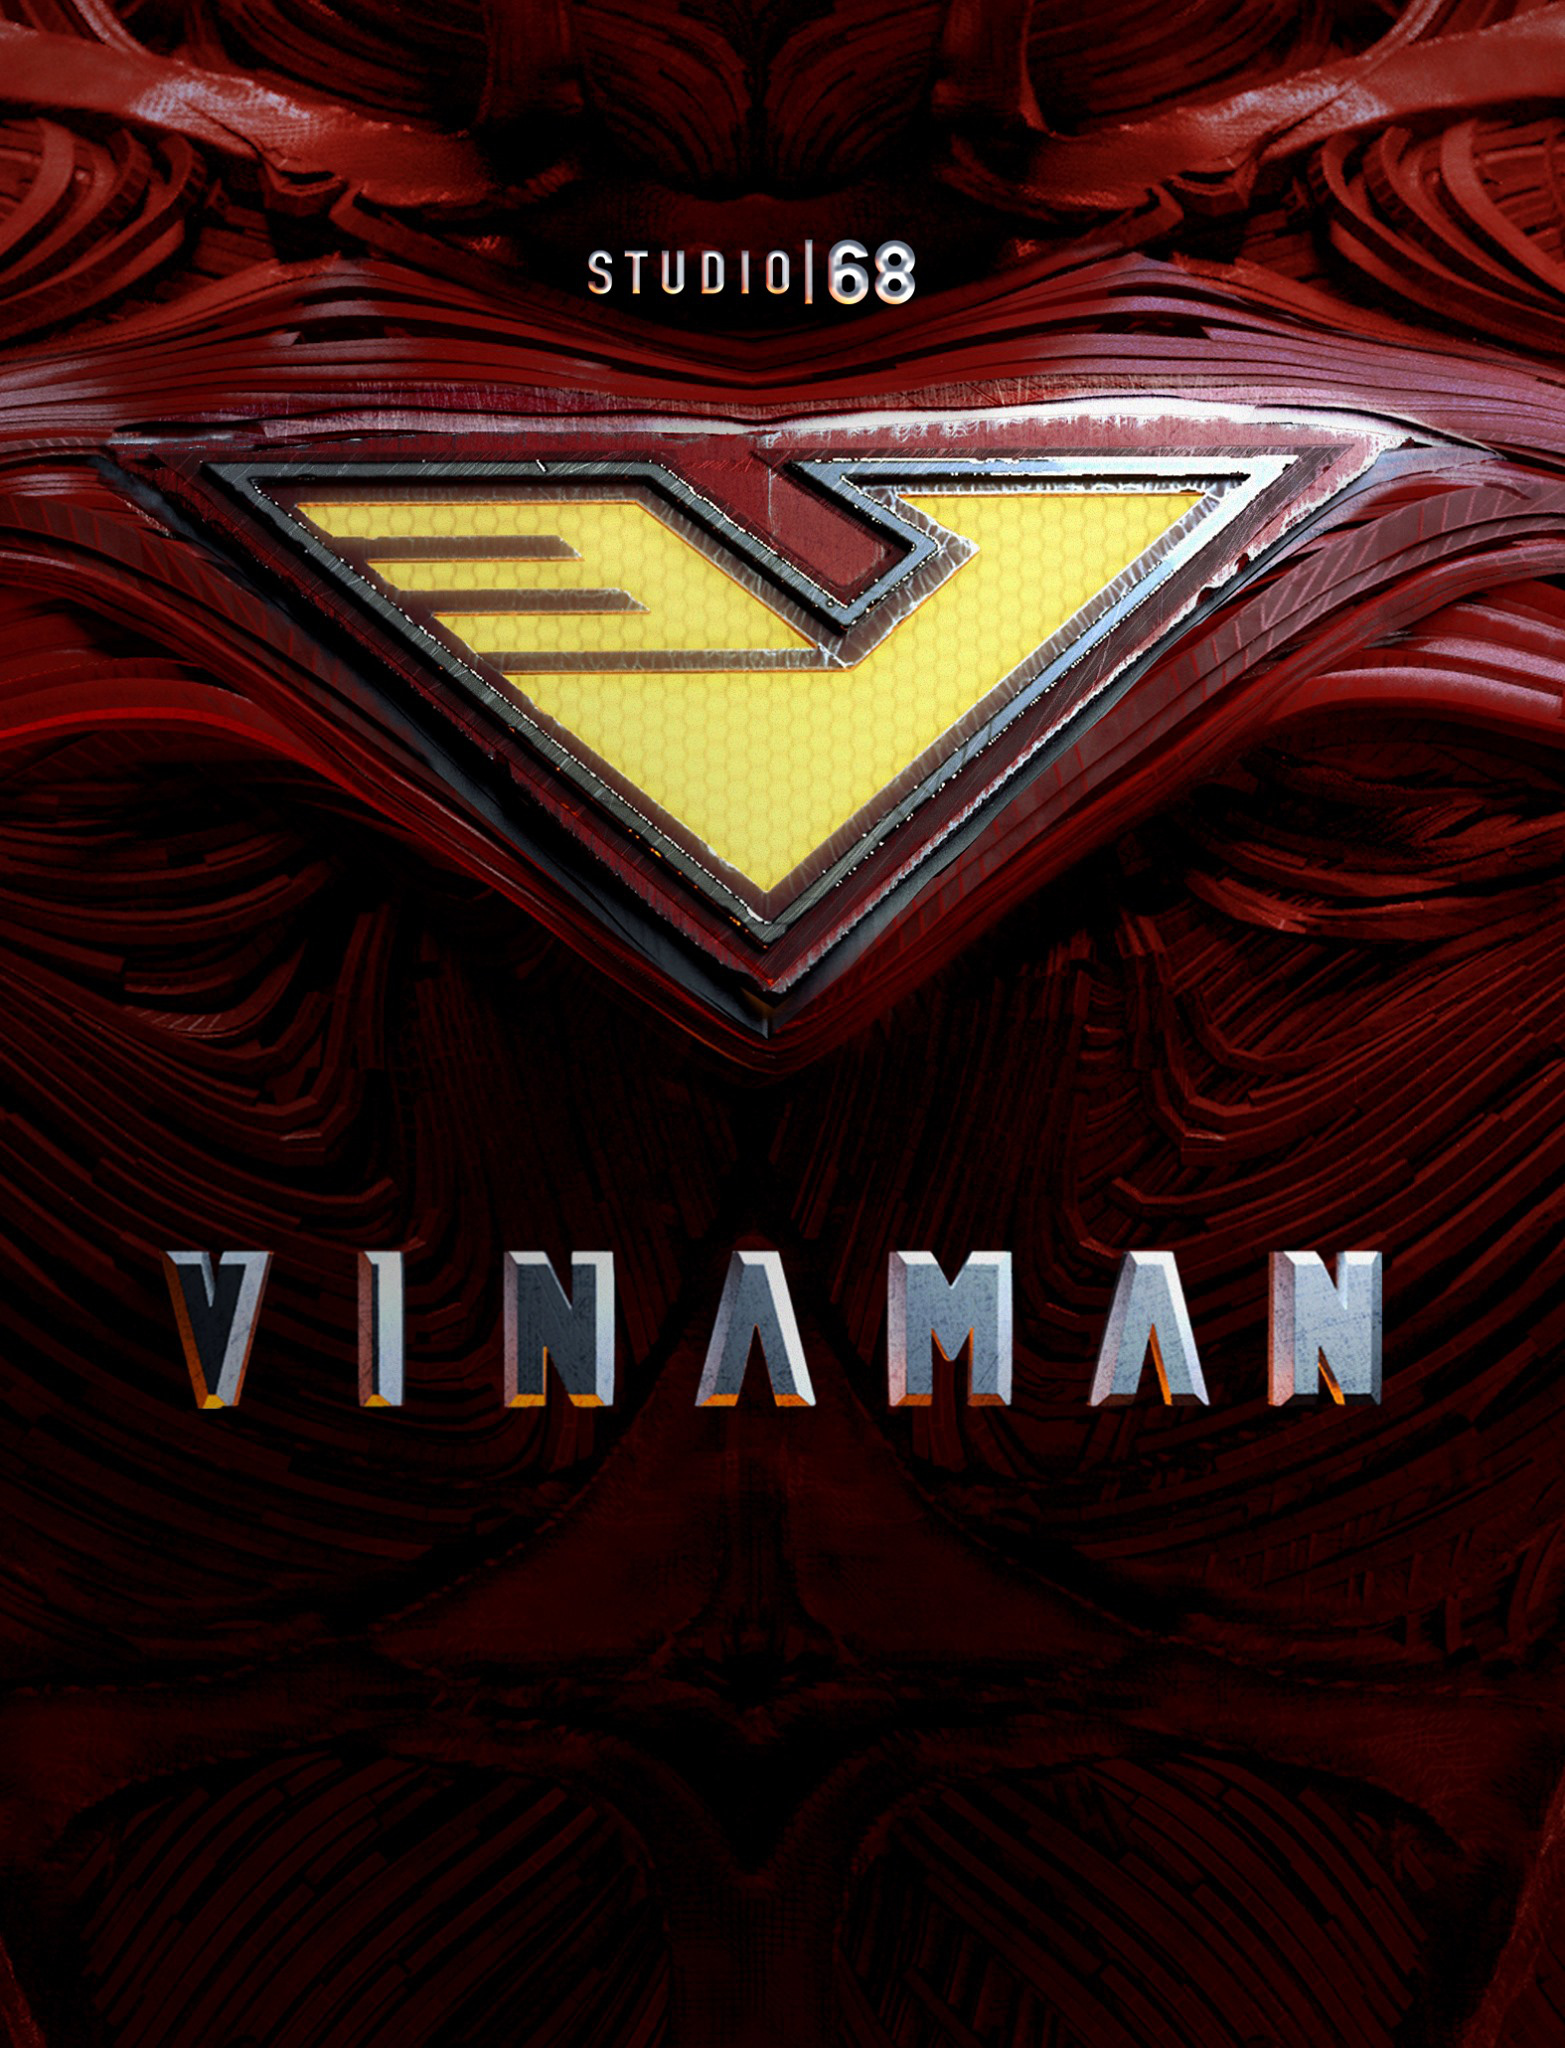 HOT: Ngô Thanh Vân công bố phim siêu anh hùng VINAMAN, khán giả giật mình từ tựa phim quá sến - Ảnh 1.